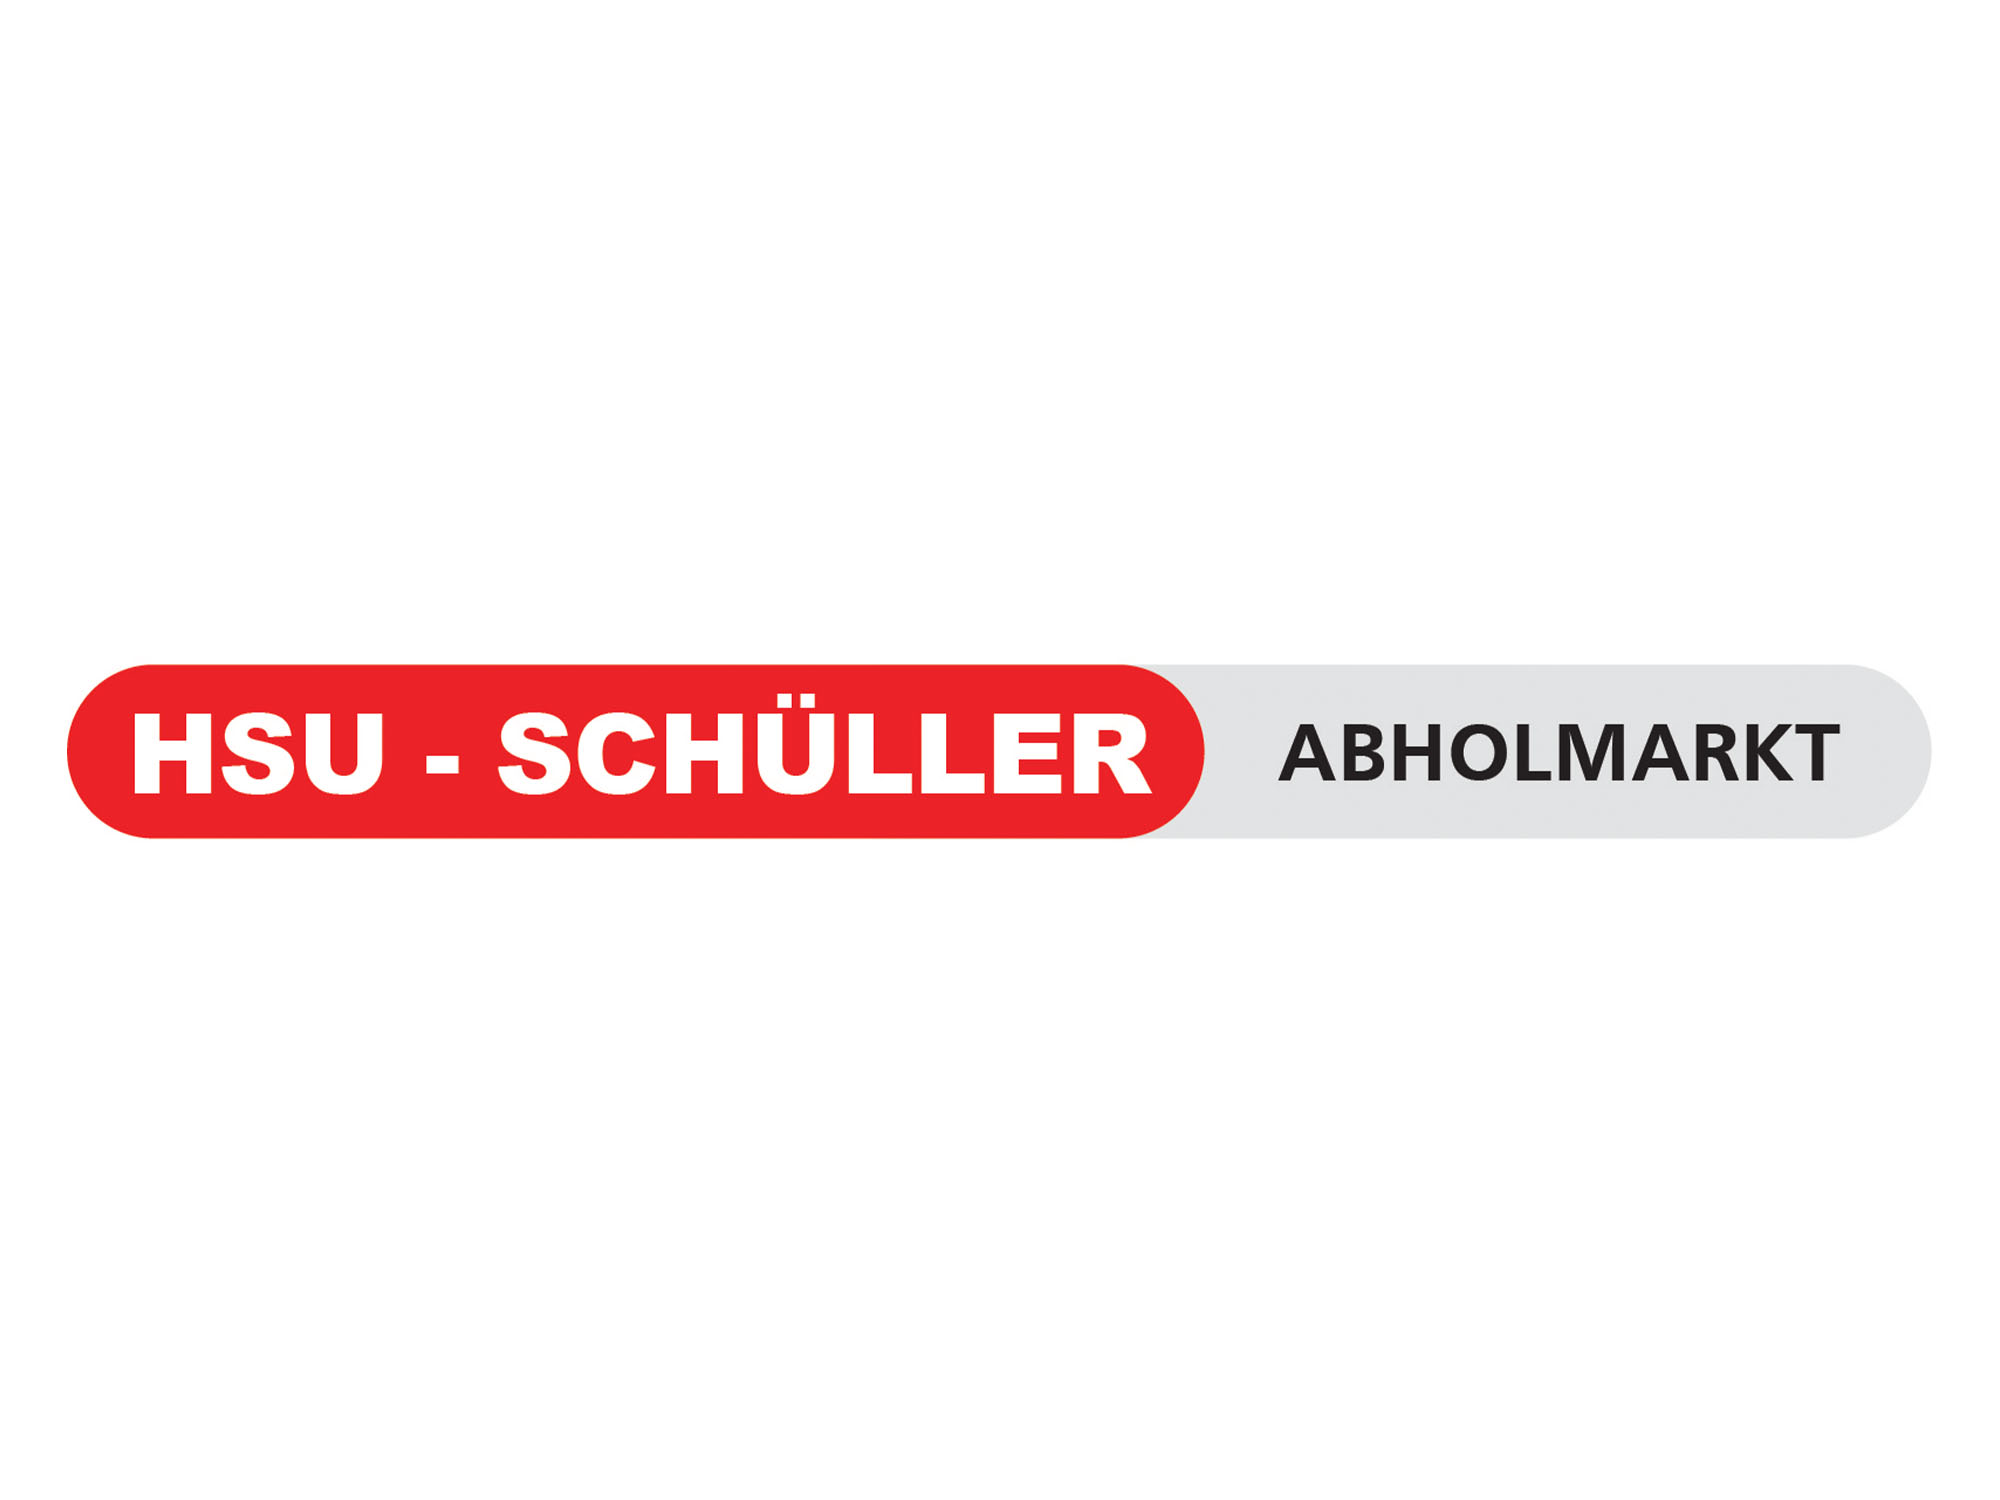 HSU Schüller Abholmarkt